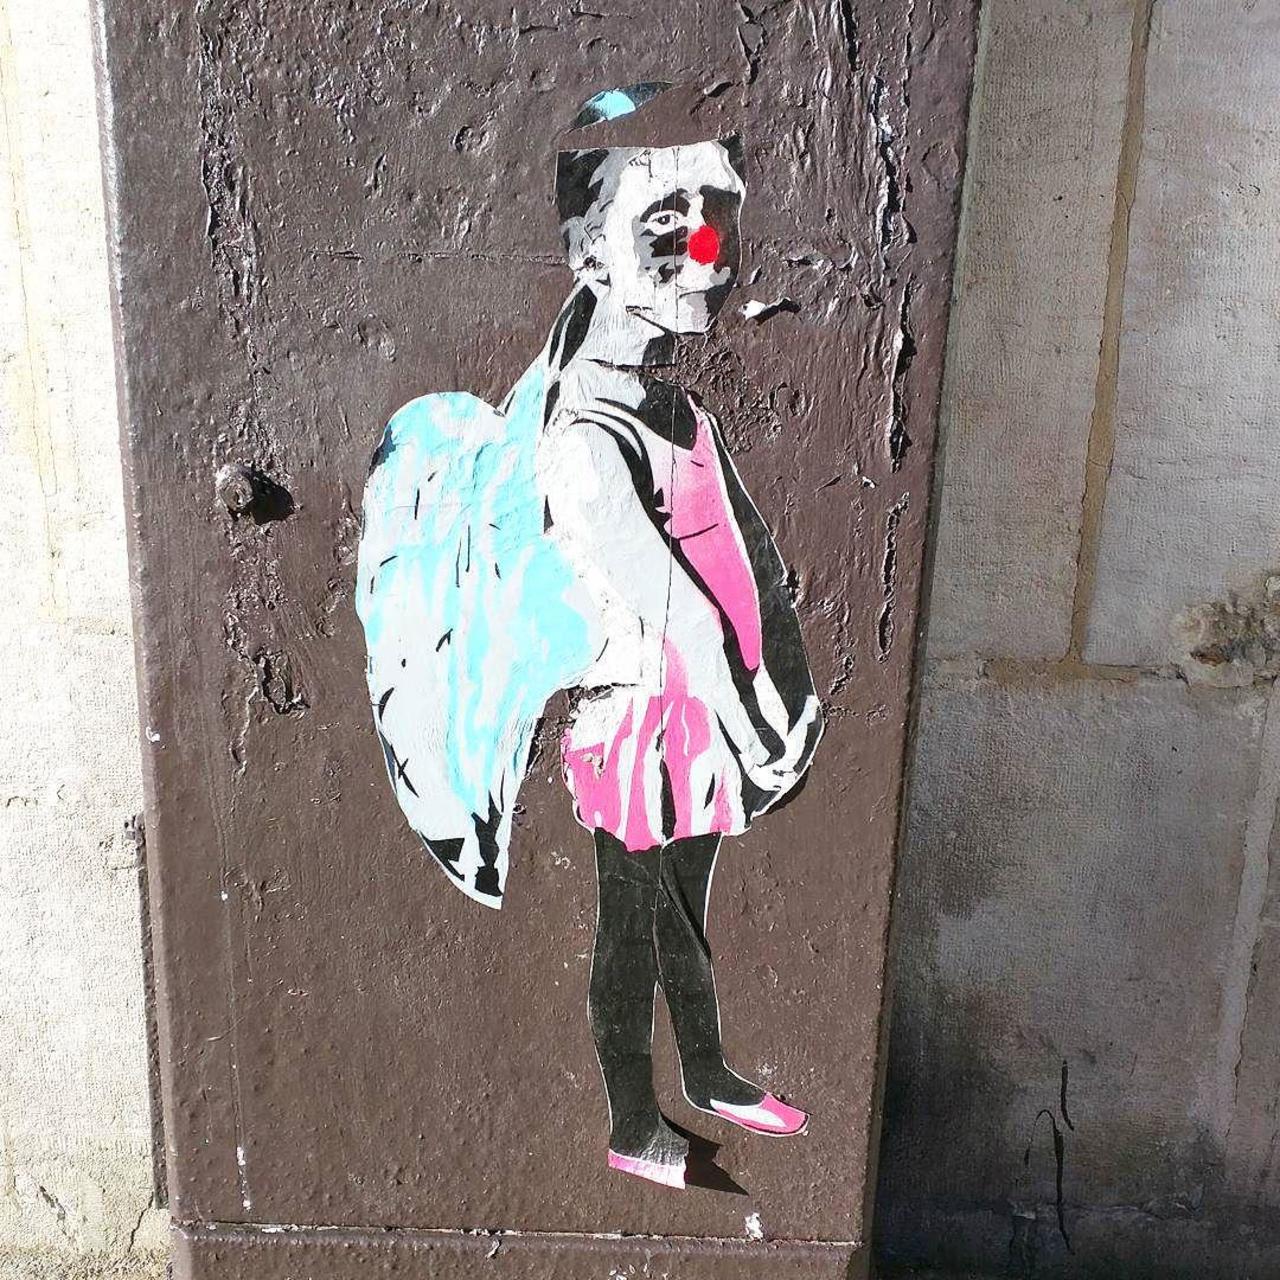 #Paris #graffiti photo by @alphaquadra http://ift.tt/1jDkGvJ #StreetArt http://t.co/RFbdxOXjdn